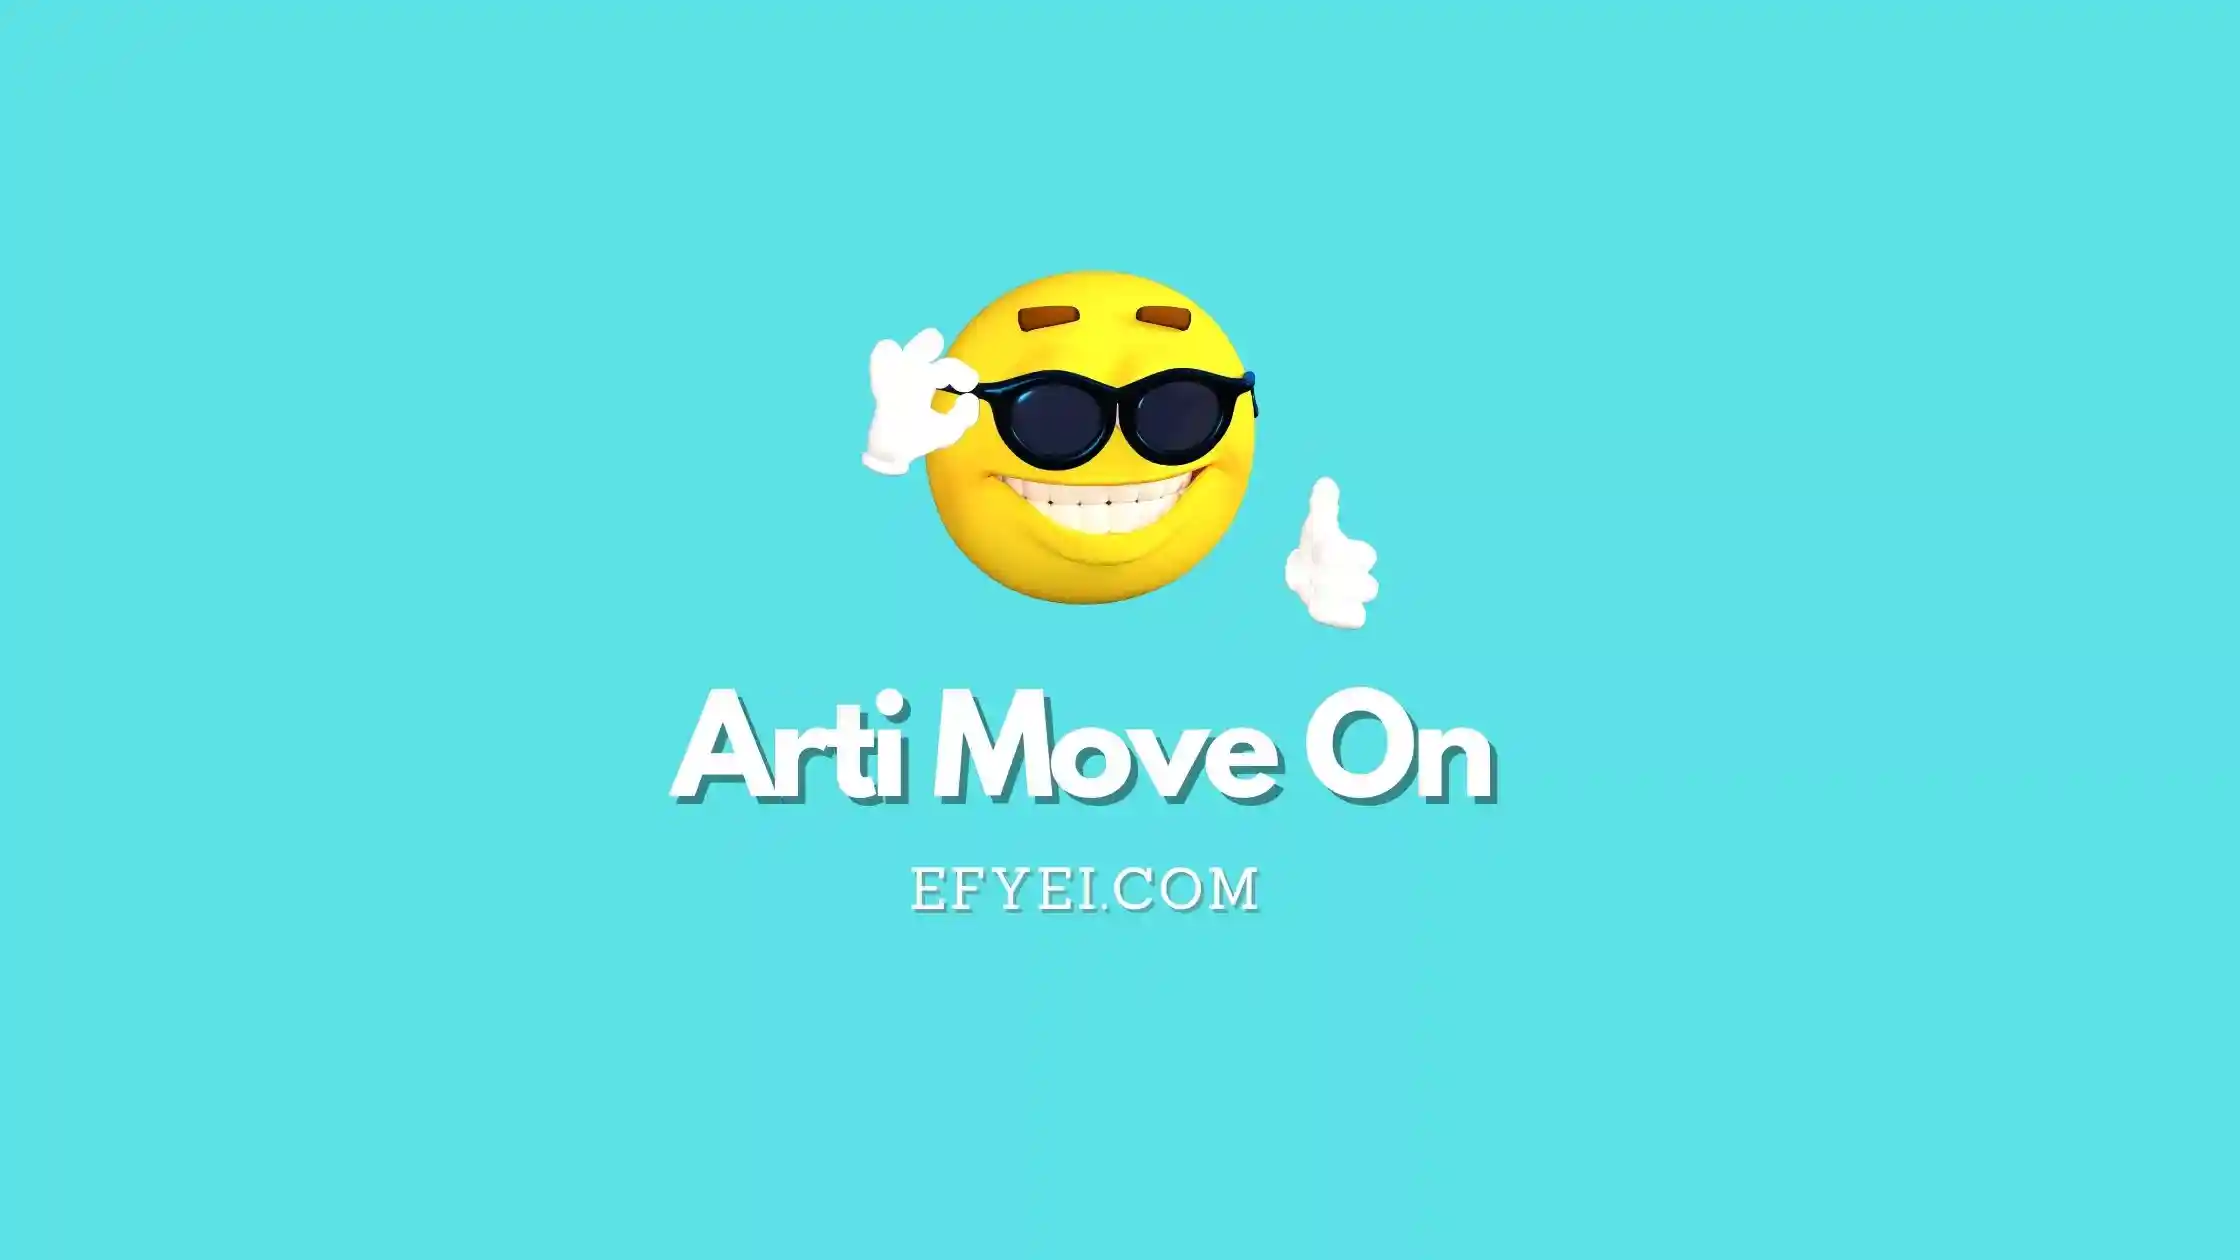 Arti Move On